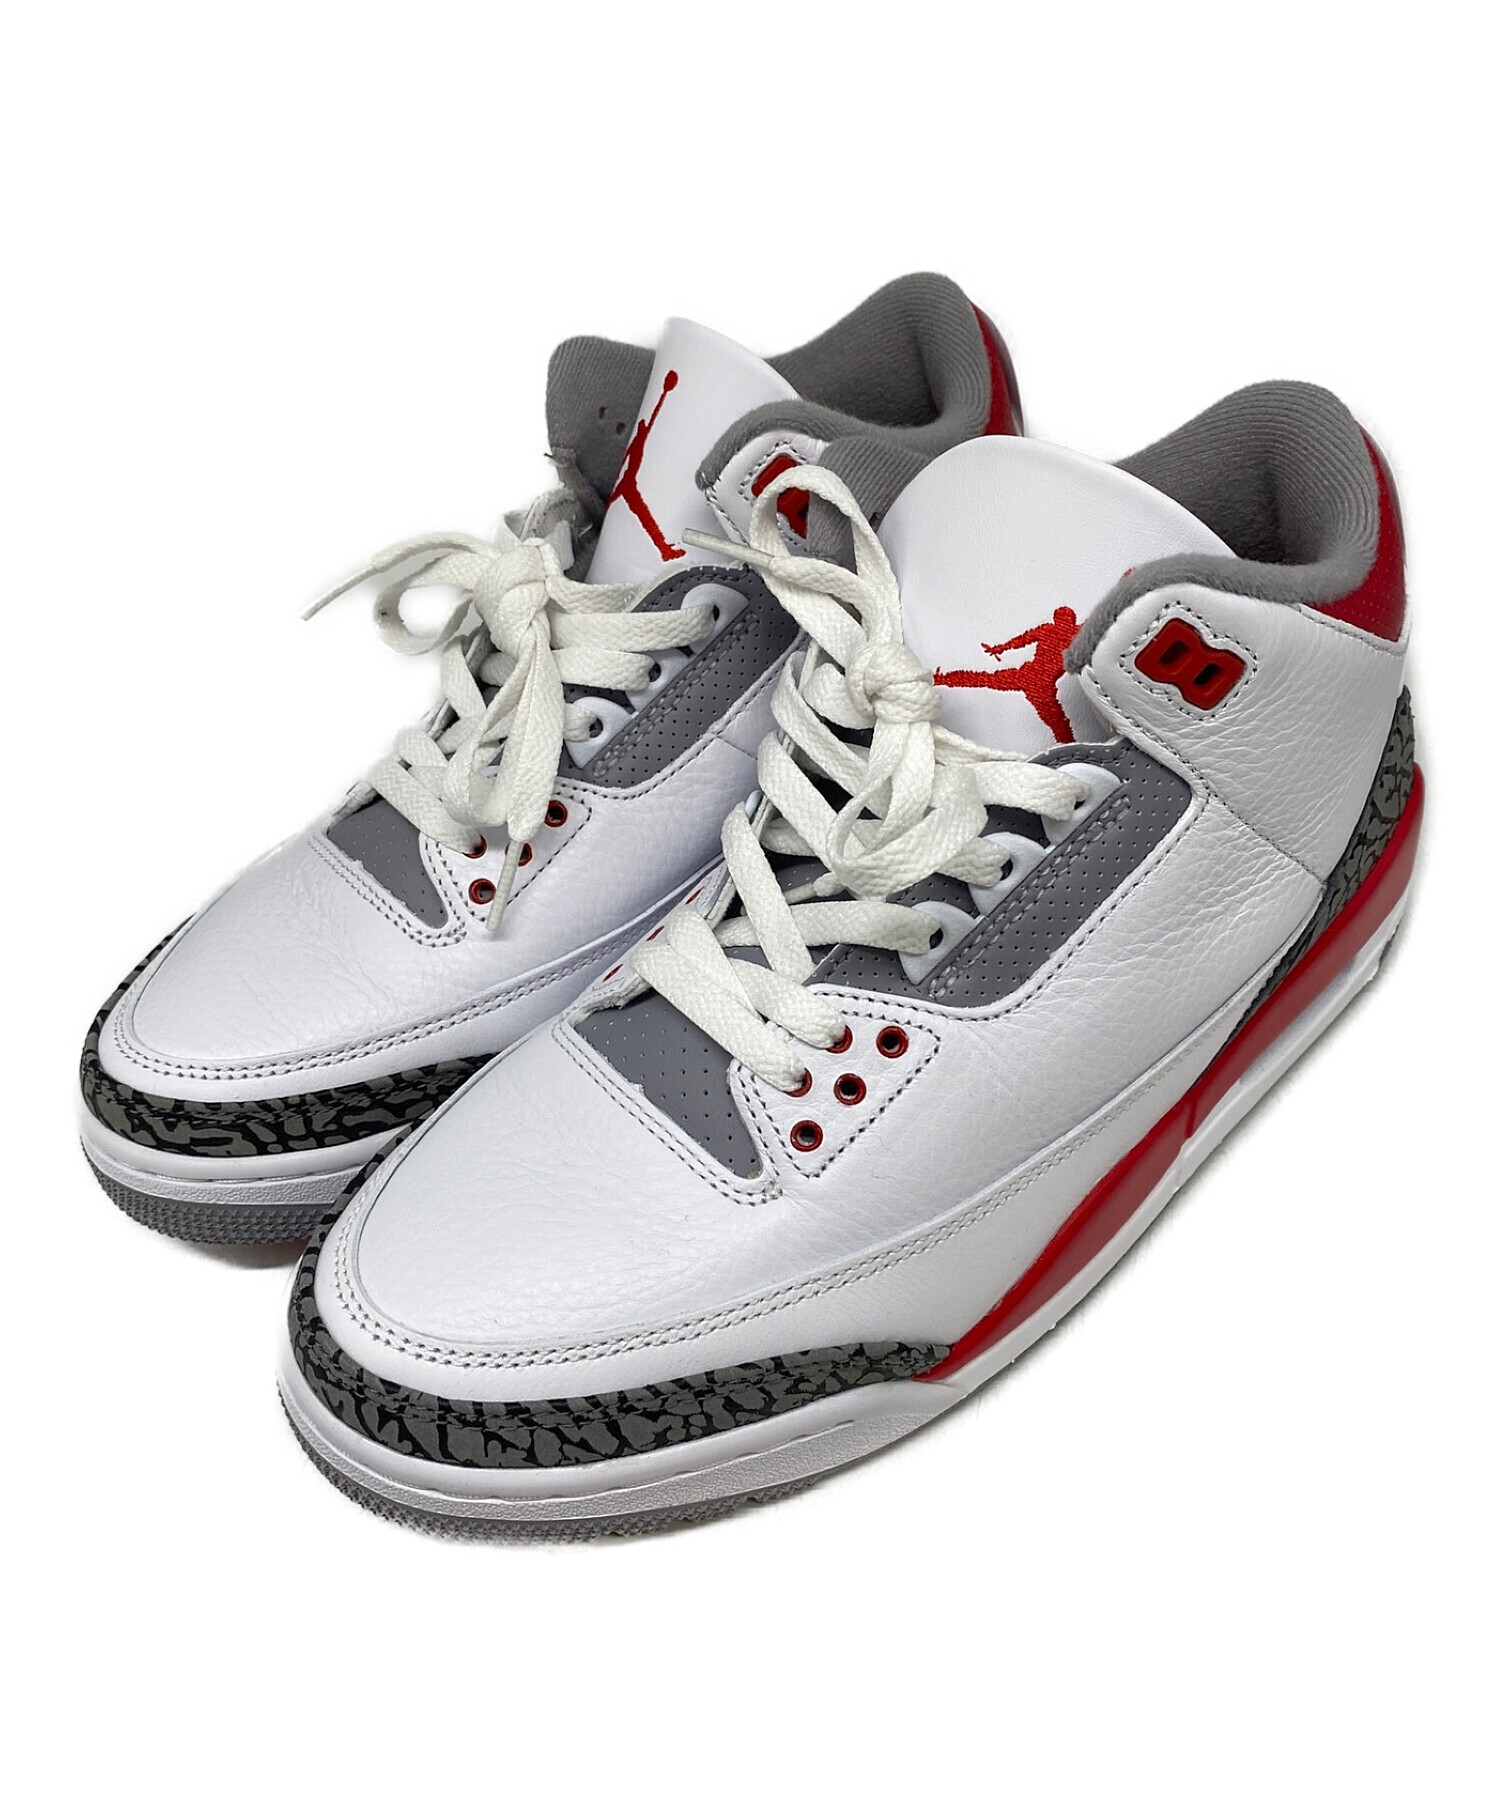 Nike Air Jordan 3 Retro OG Fire Red